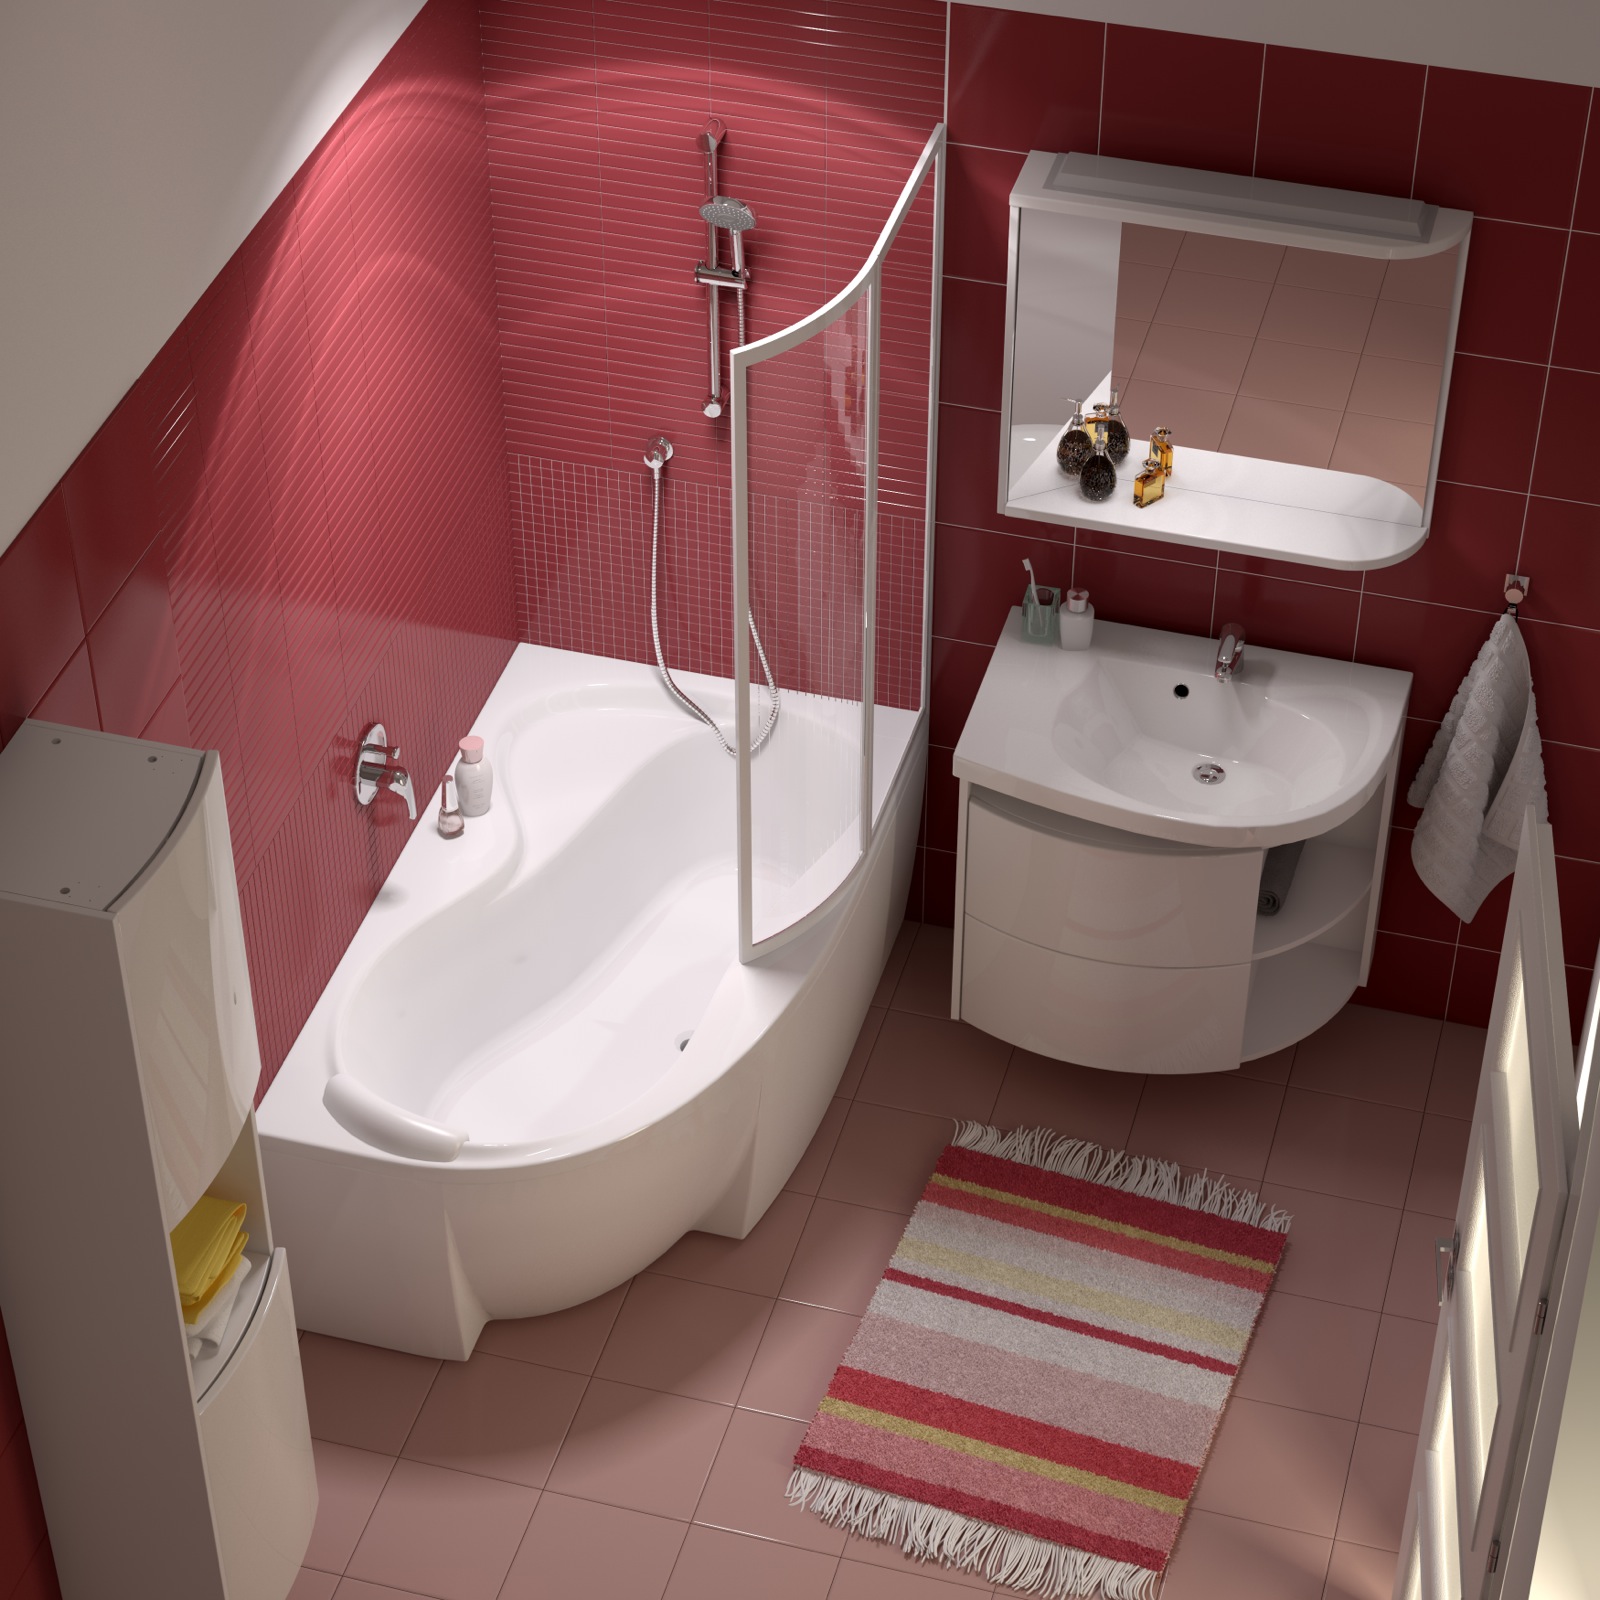 Az egységes stílusú kád, zuhanysarok, mosdó, fürdőszobabútor és csaptelep megoldásokat kínáló RAVAK Rosa koncepció megfelel a legkisebb fürdőszobákba is. 